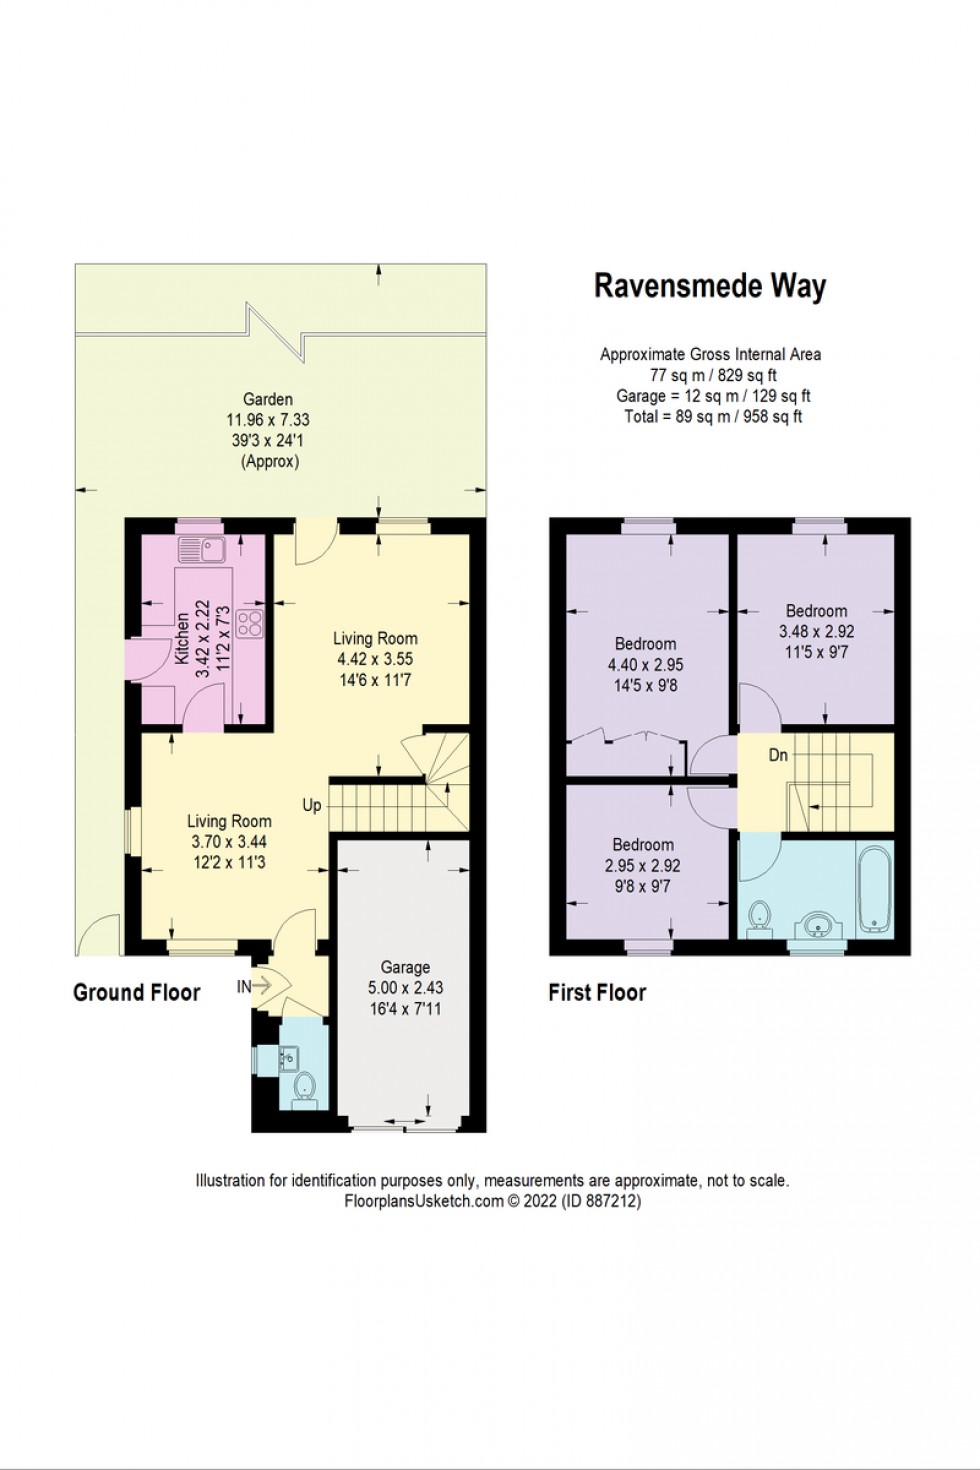 Floorplan for Ravensmede Way